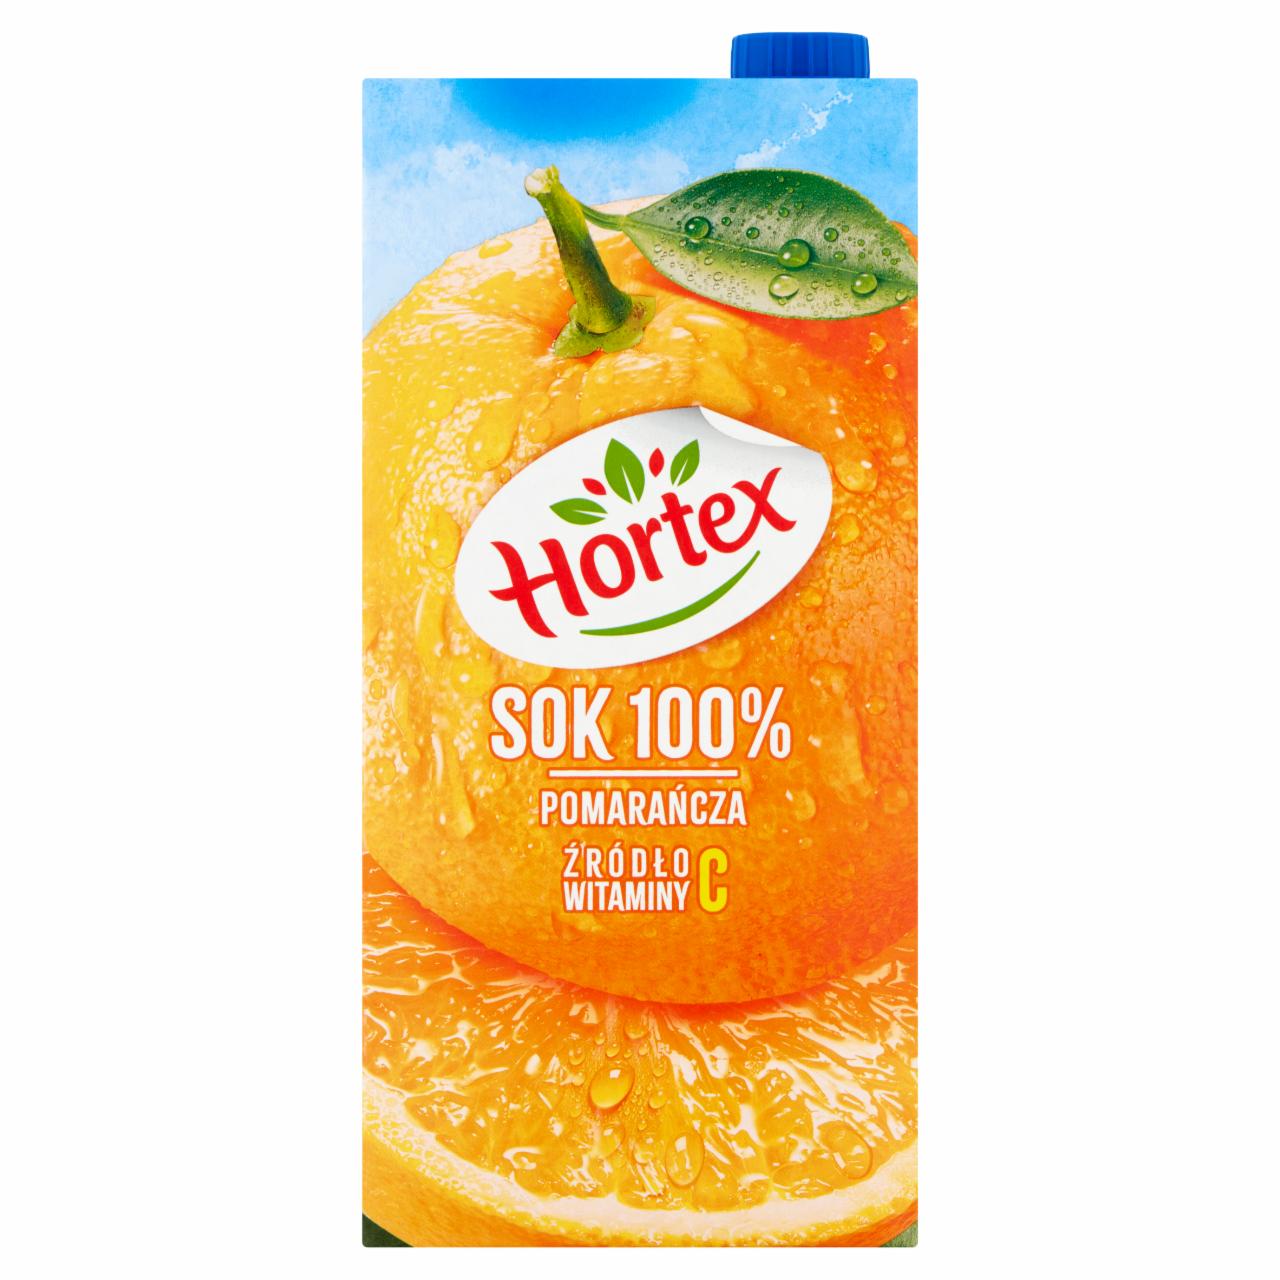 Zdjęcia - Hortex Sok 100 % pomarańcza 2 l